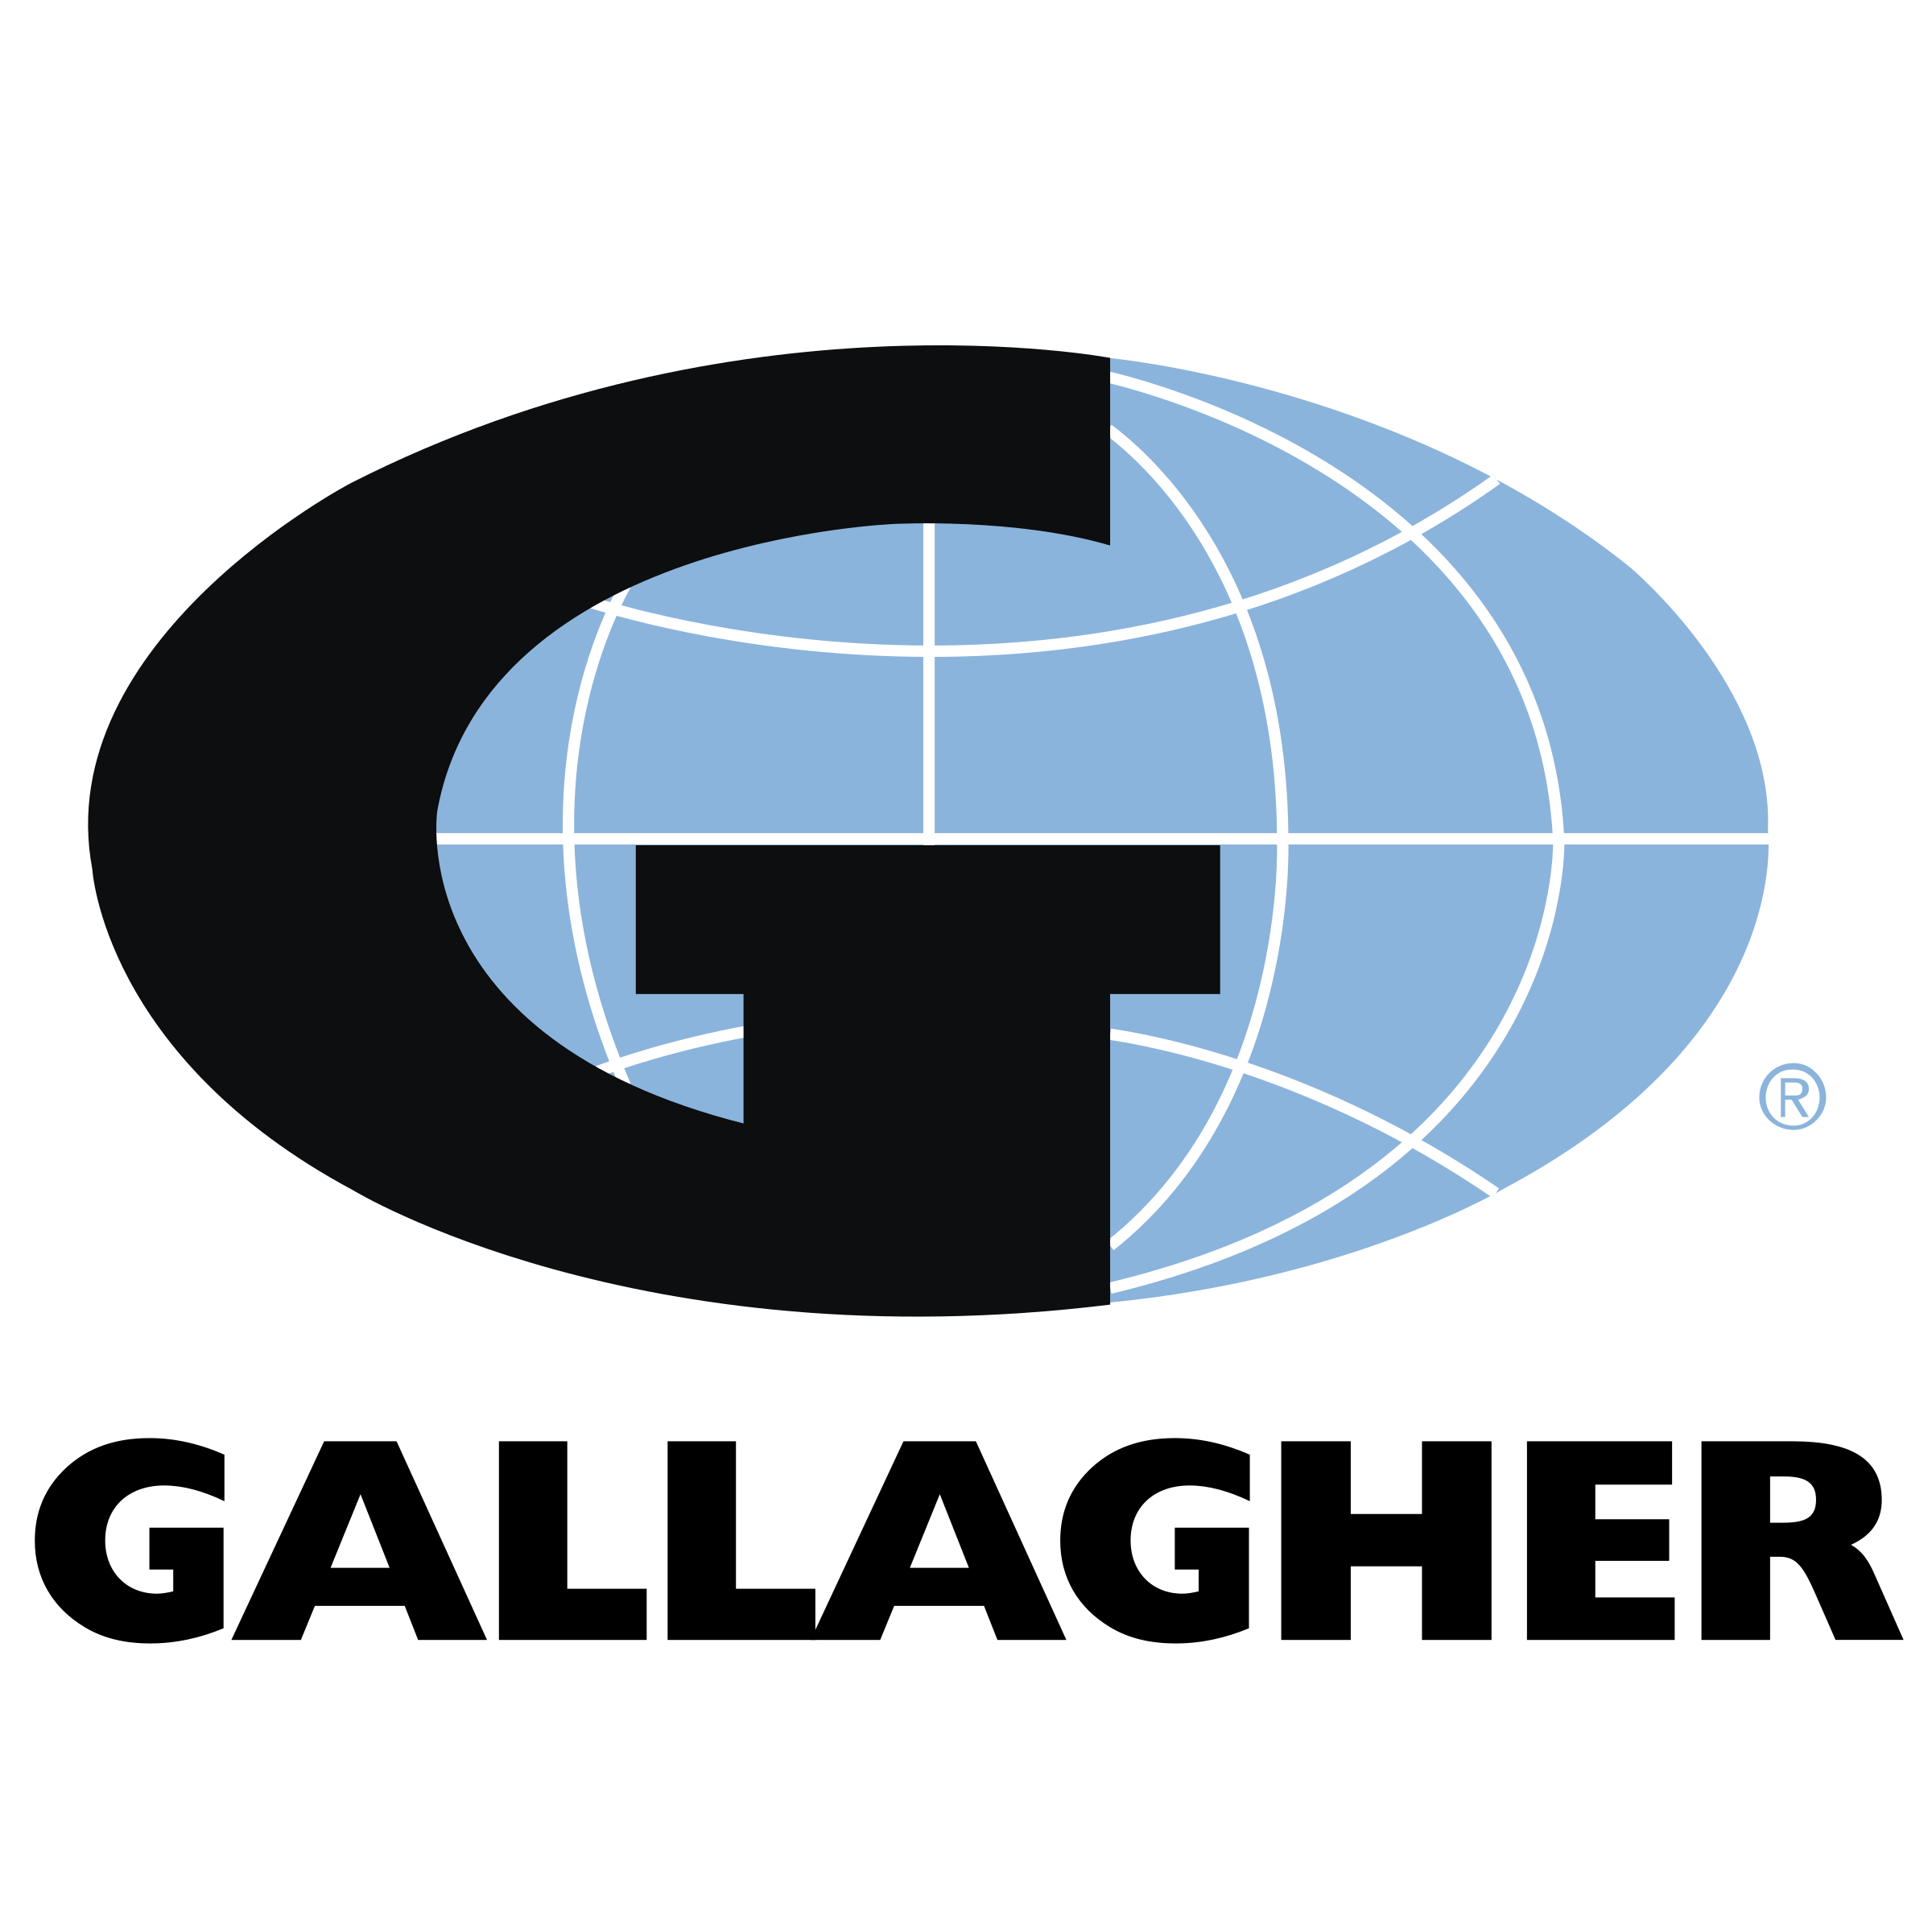 Gallagher Logo - Gallagher Logo PNG Transparent & SVG Vector